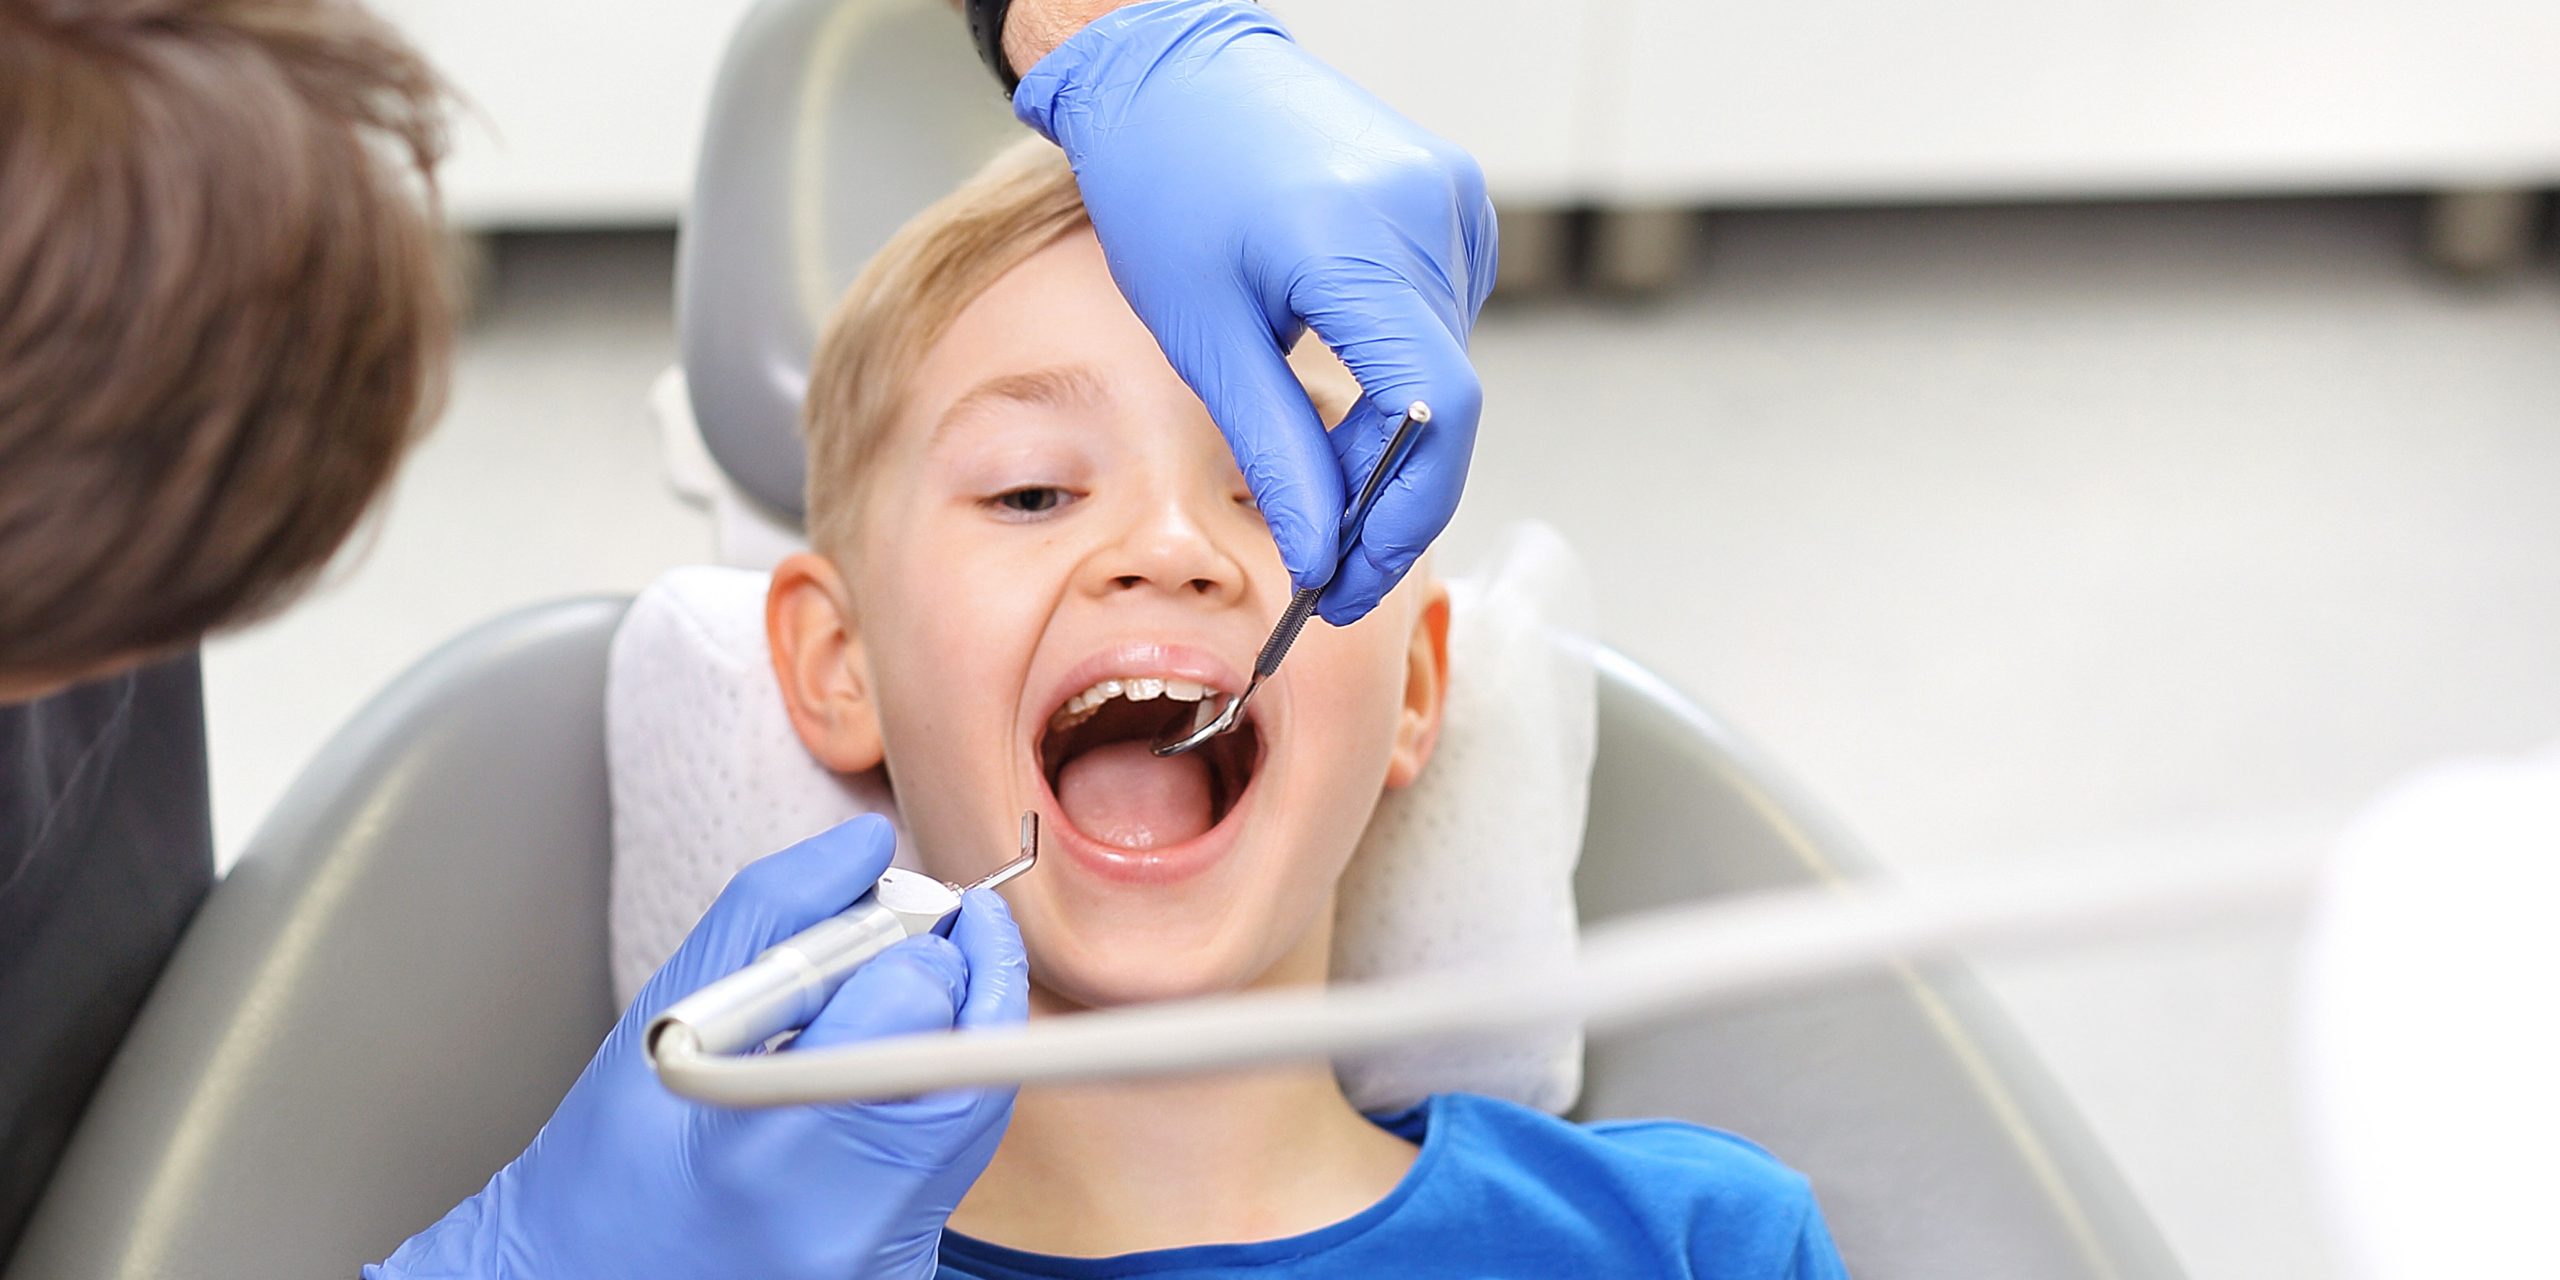 Cuidado dental en niños